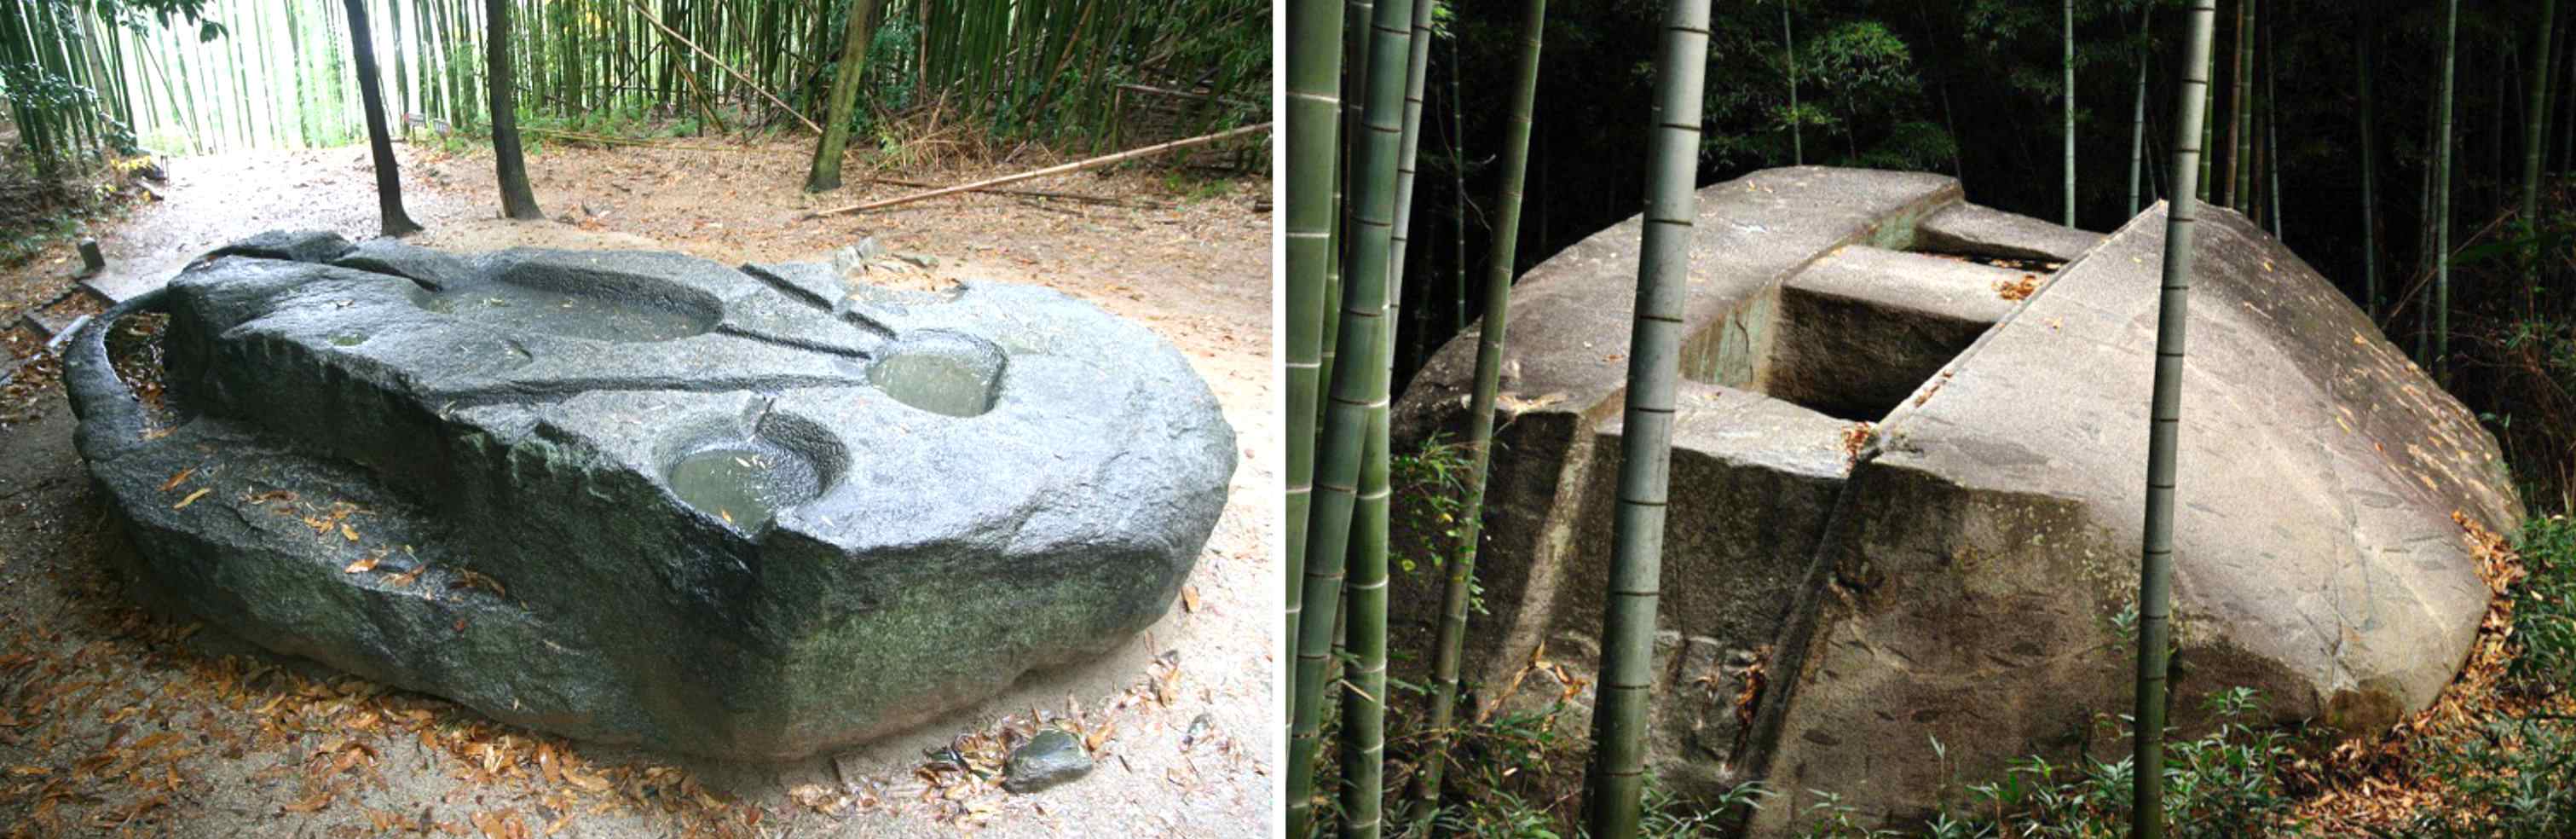 Gamle mekanismer: Byggede giganter denne japanske megalit, der vejede hundredvis af tons? 3